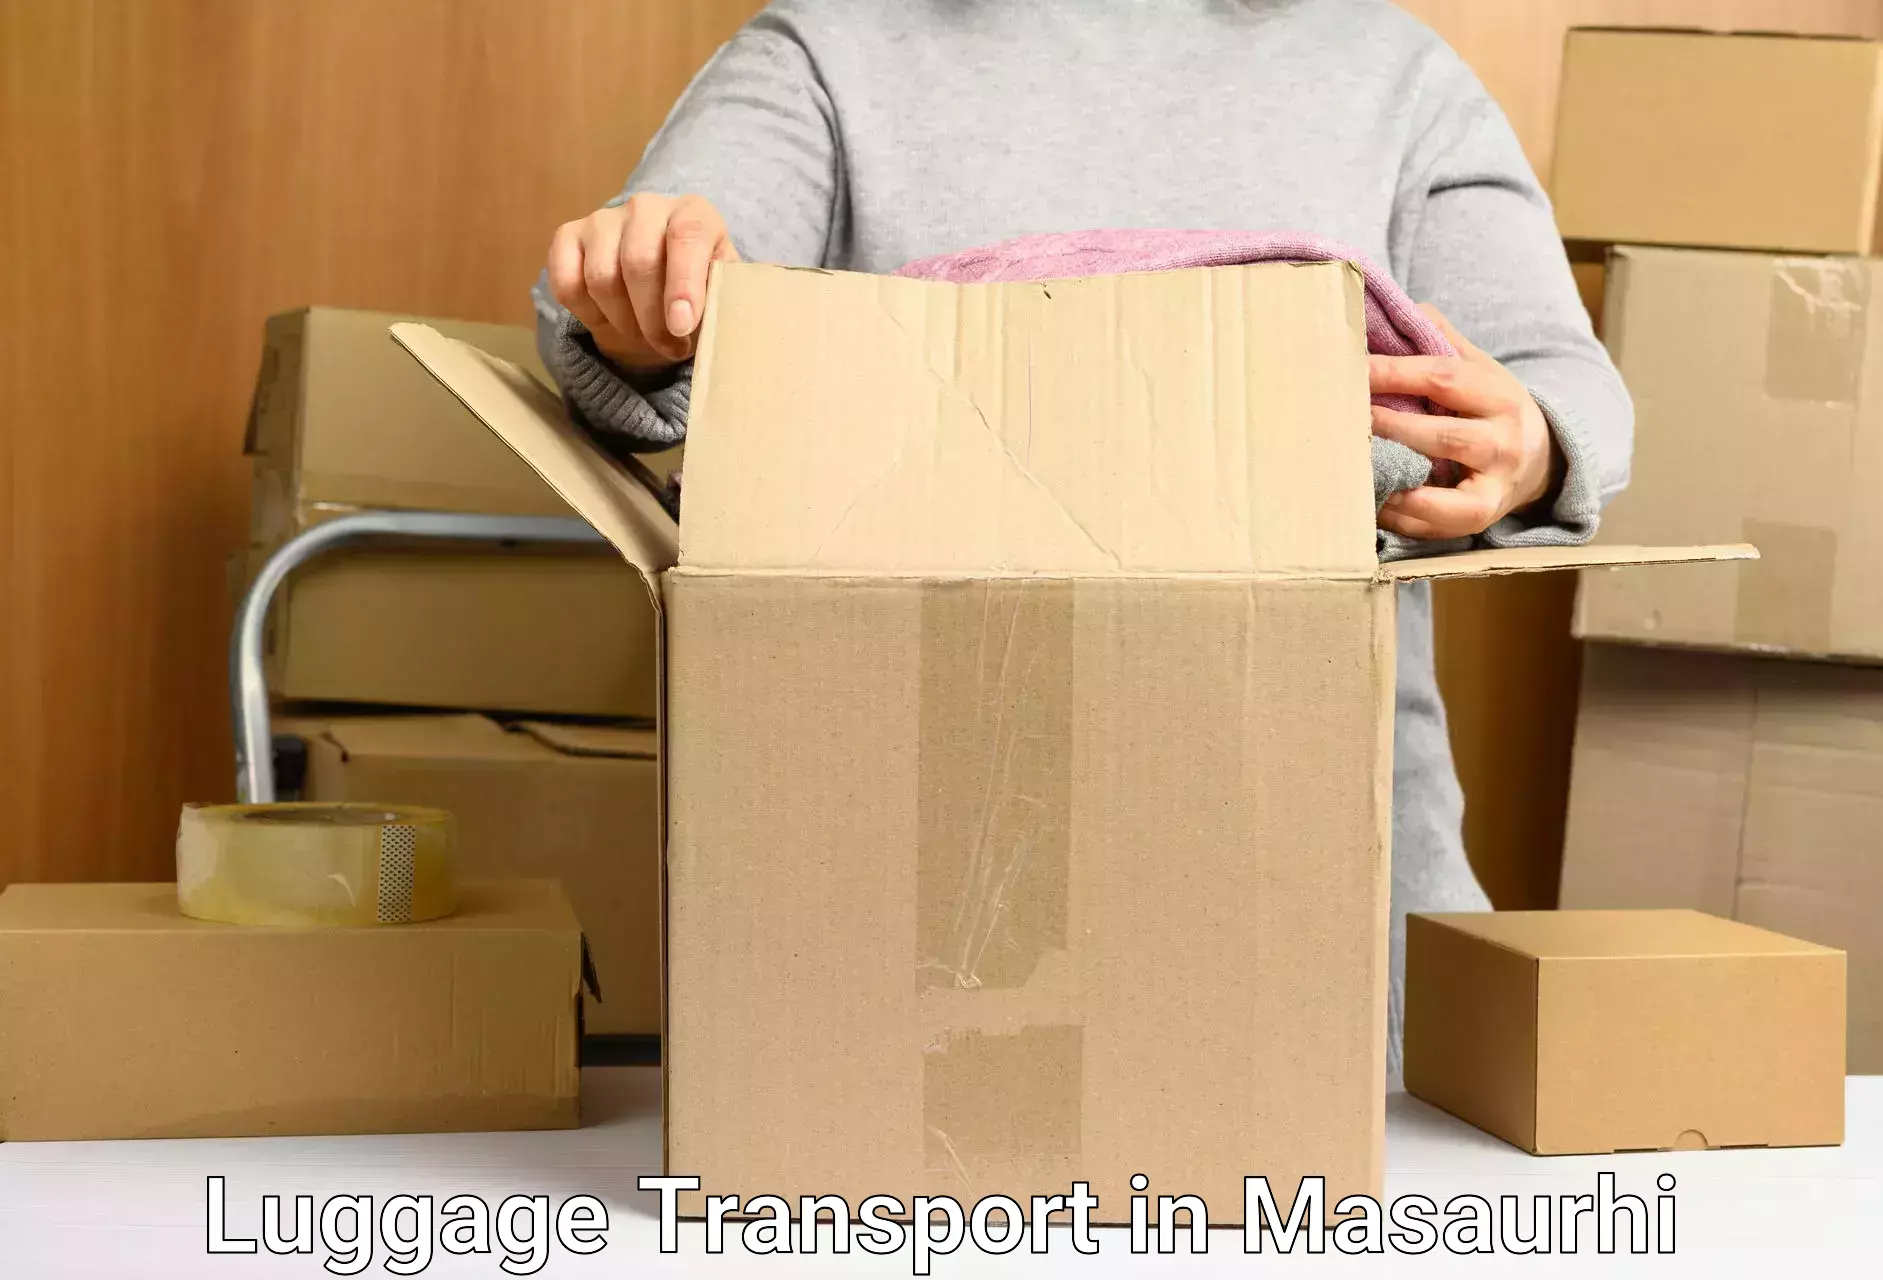 Luggage forwarding service in Masaurhi